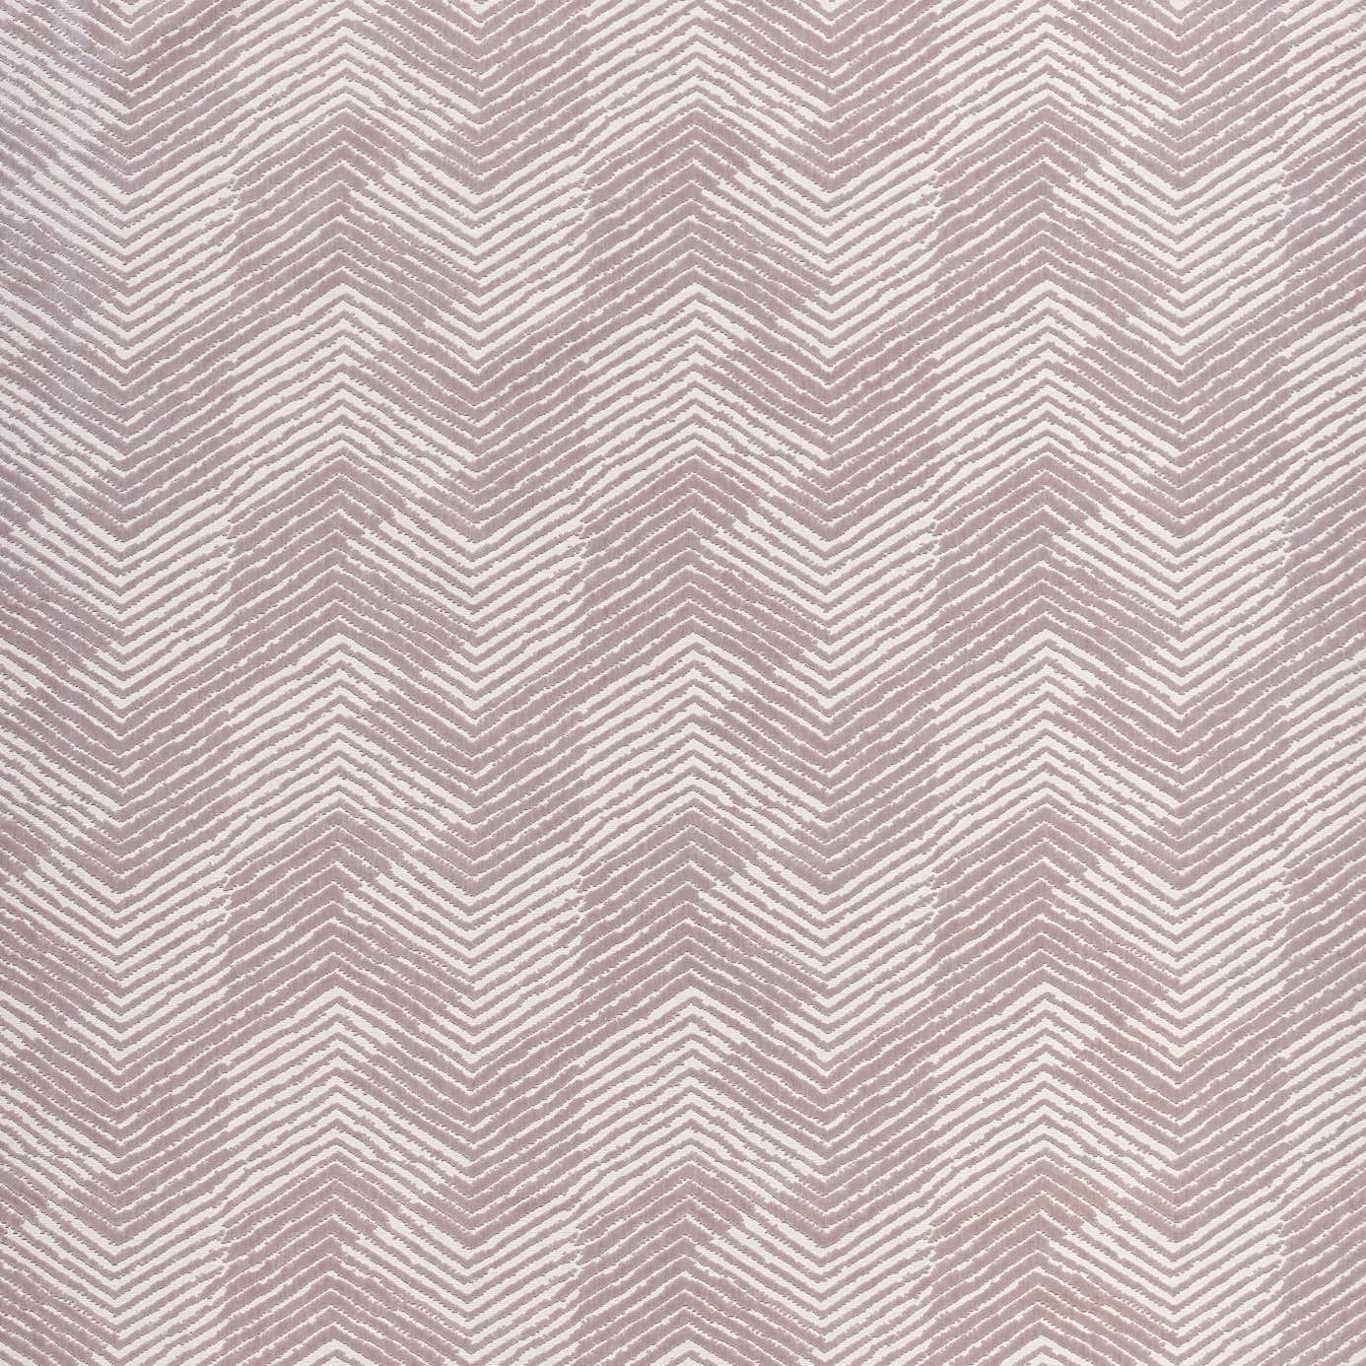 Grade Rose Quartz Fabric by HAR